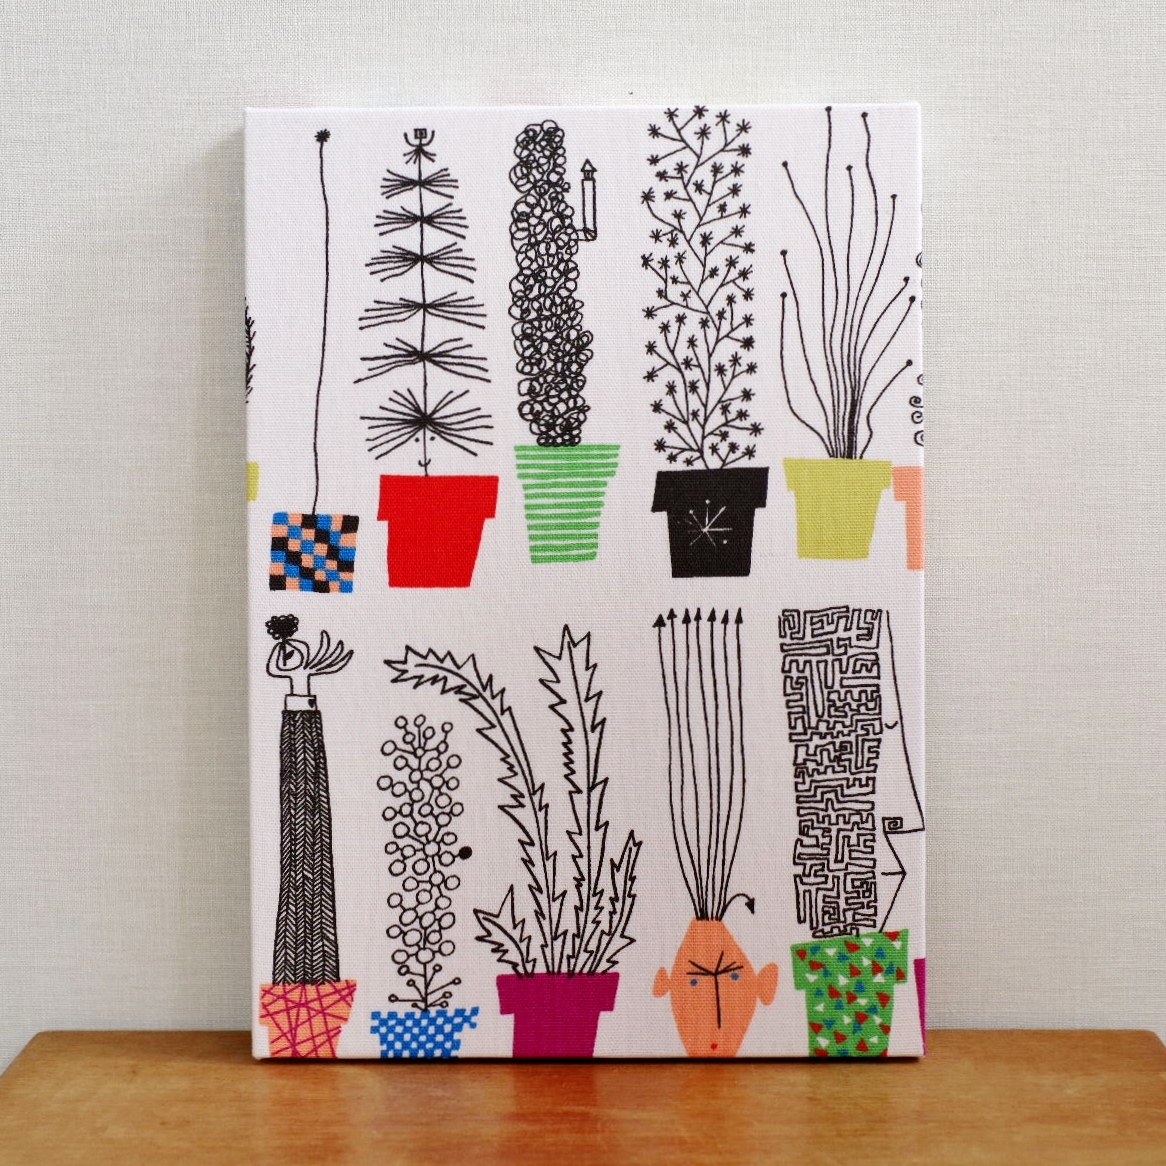 شحن مجاني لوحة قماش إسكندنافية ألميدالس زهور لوحة فنية للتعليق على الحائط الداخلي A4, الأعمال اليدوية, الداخلية, بضائع متنوعة, لوحة, نسيج